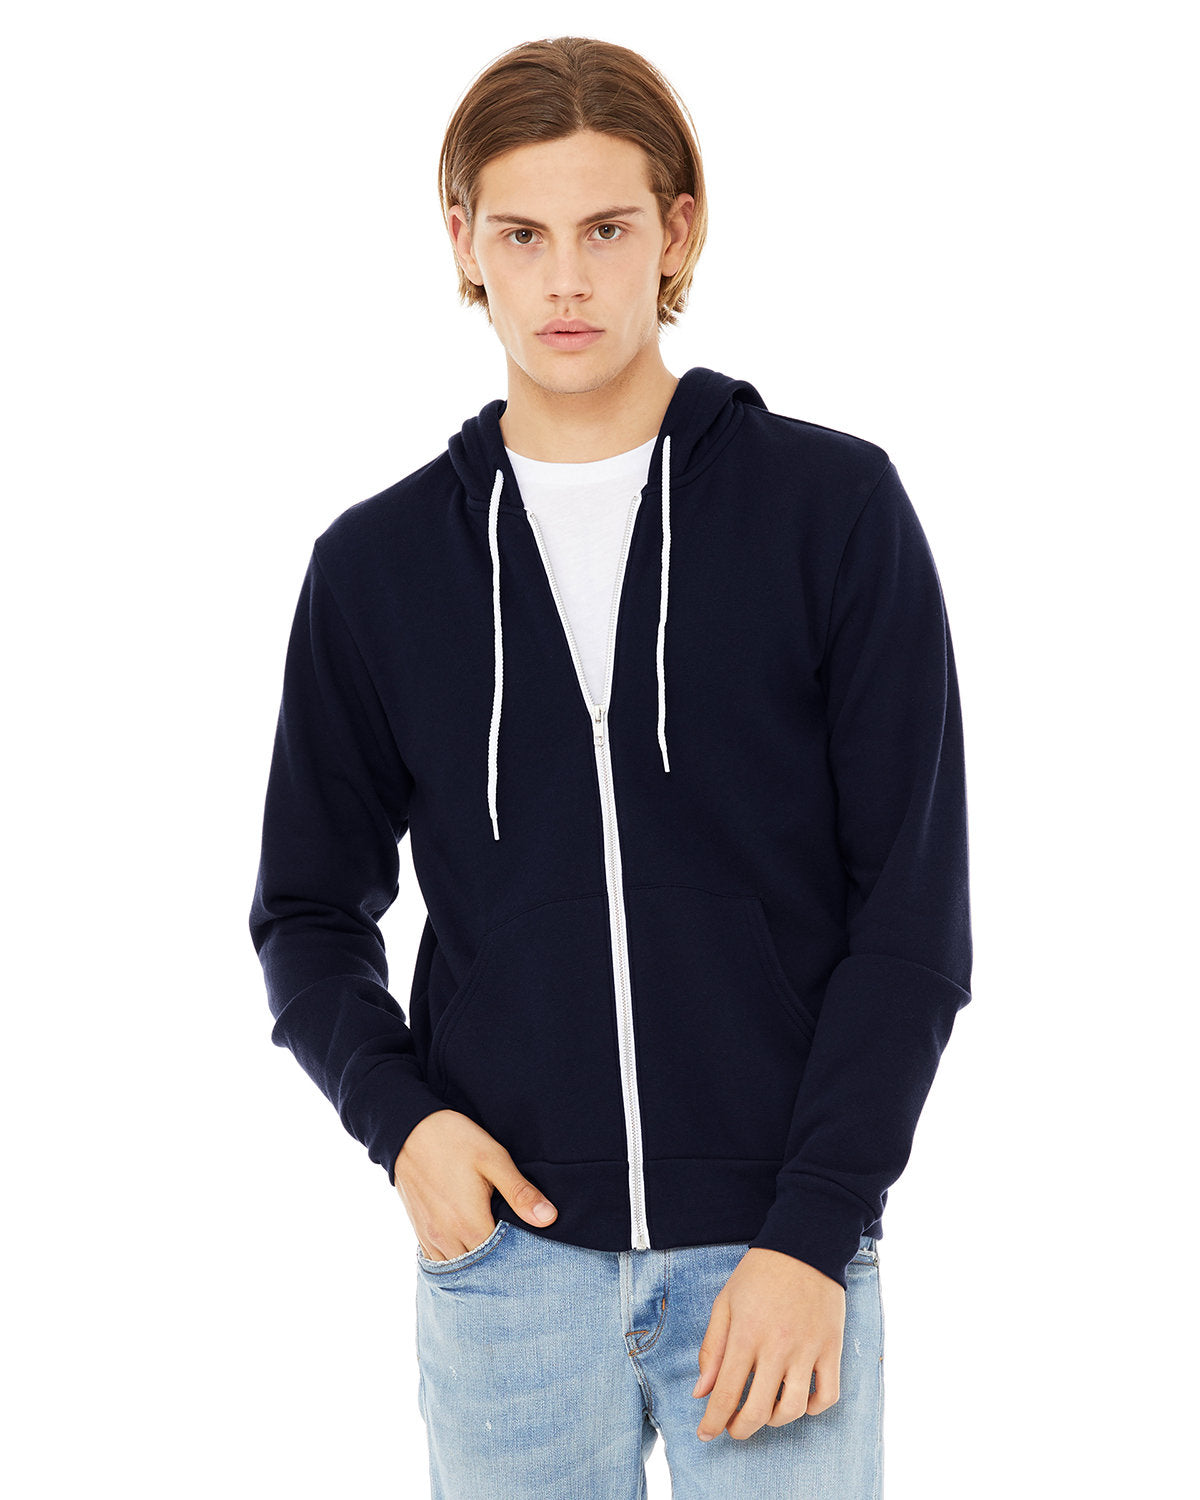 Bella + Canvas Unisex Versatile Warmth: Poly-Cotton Fleece Full-Zip Hooded Sweatshirt